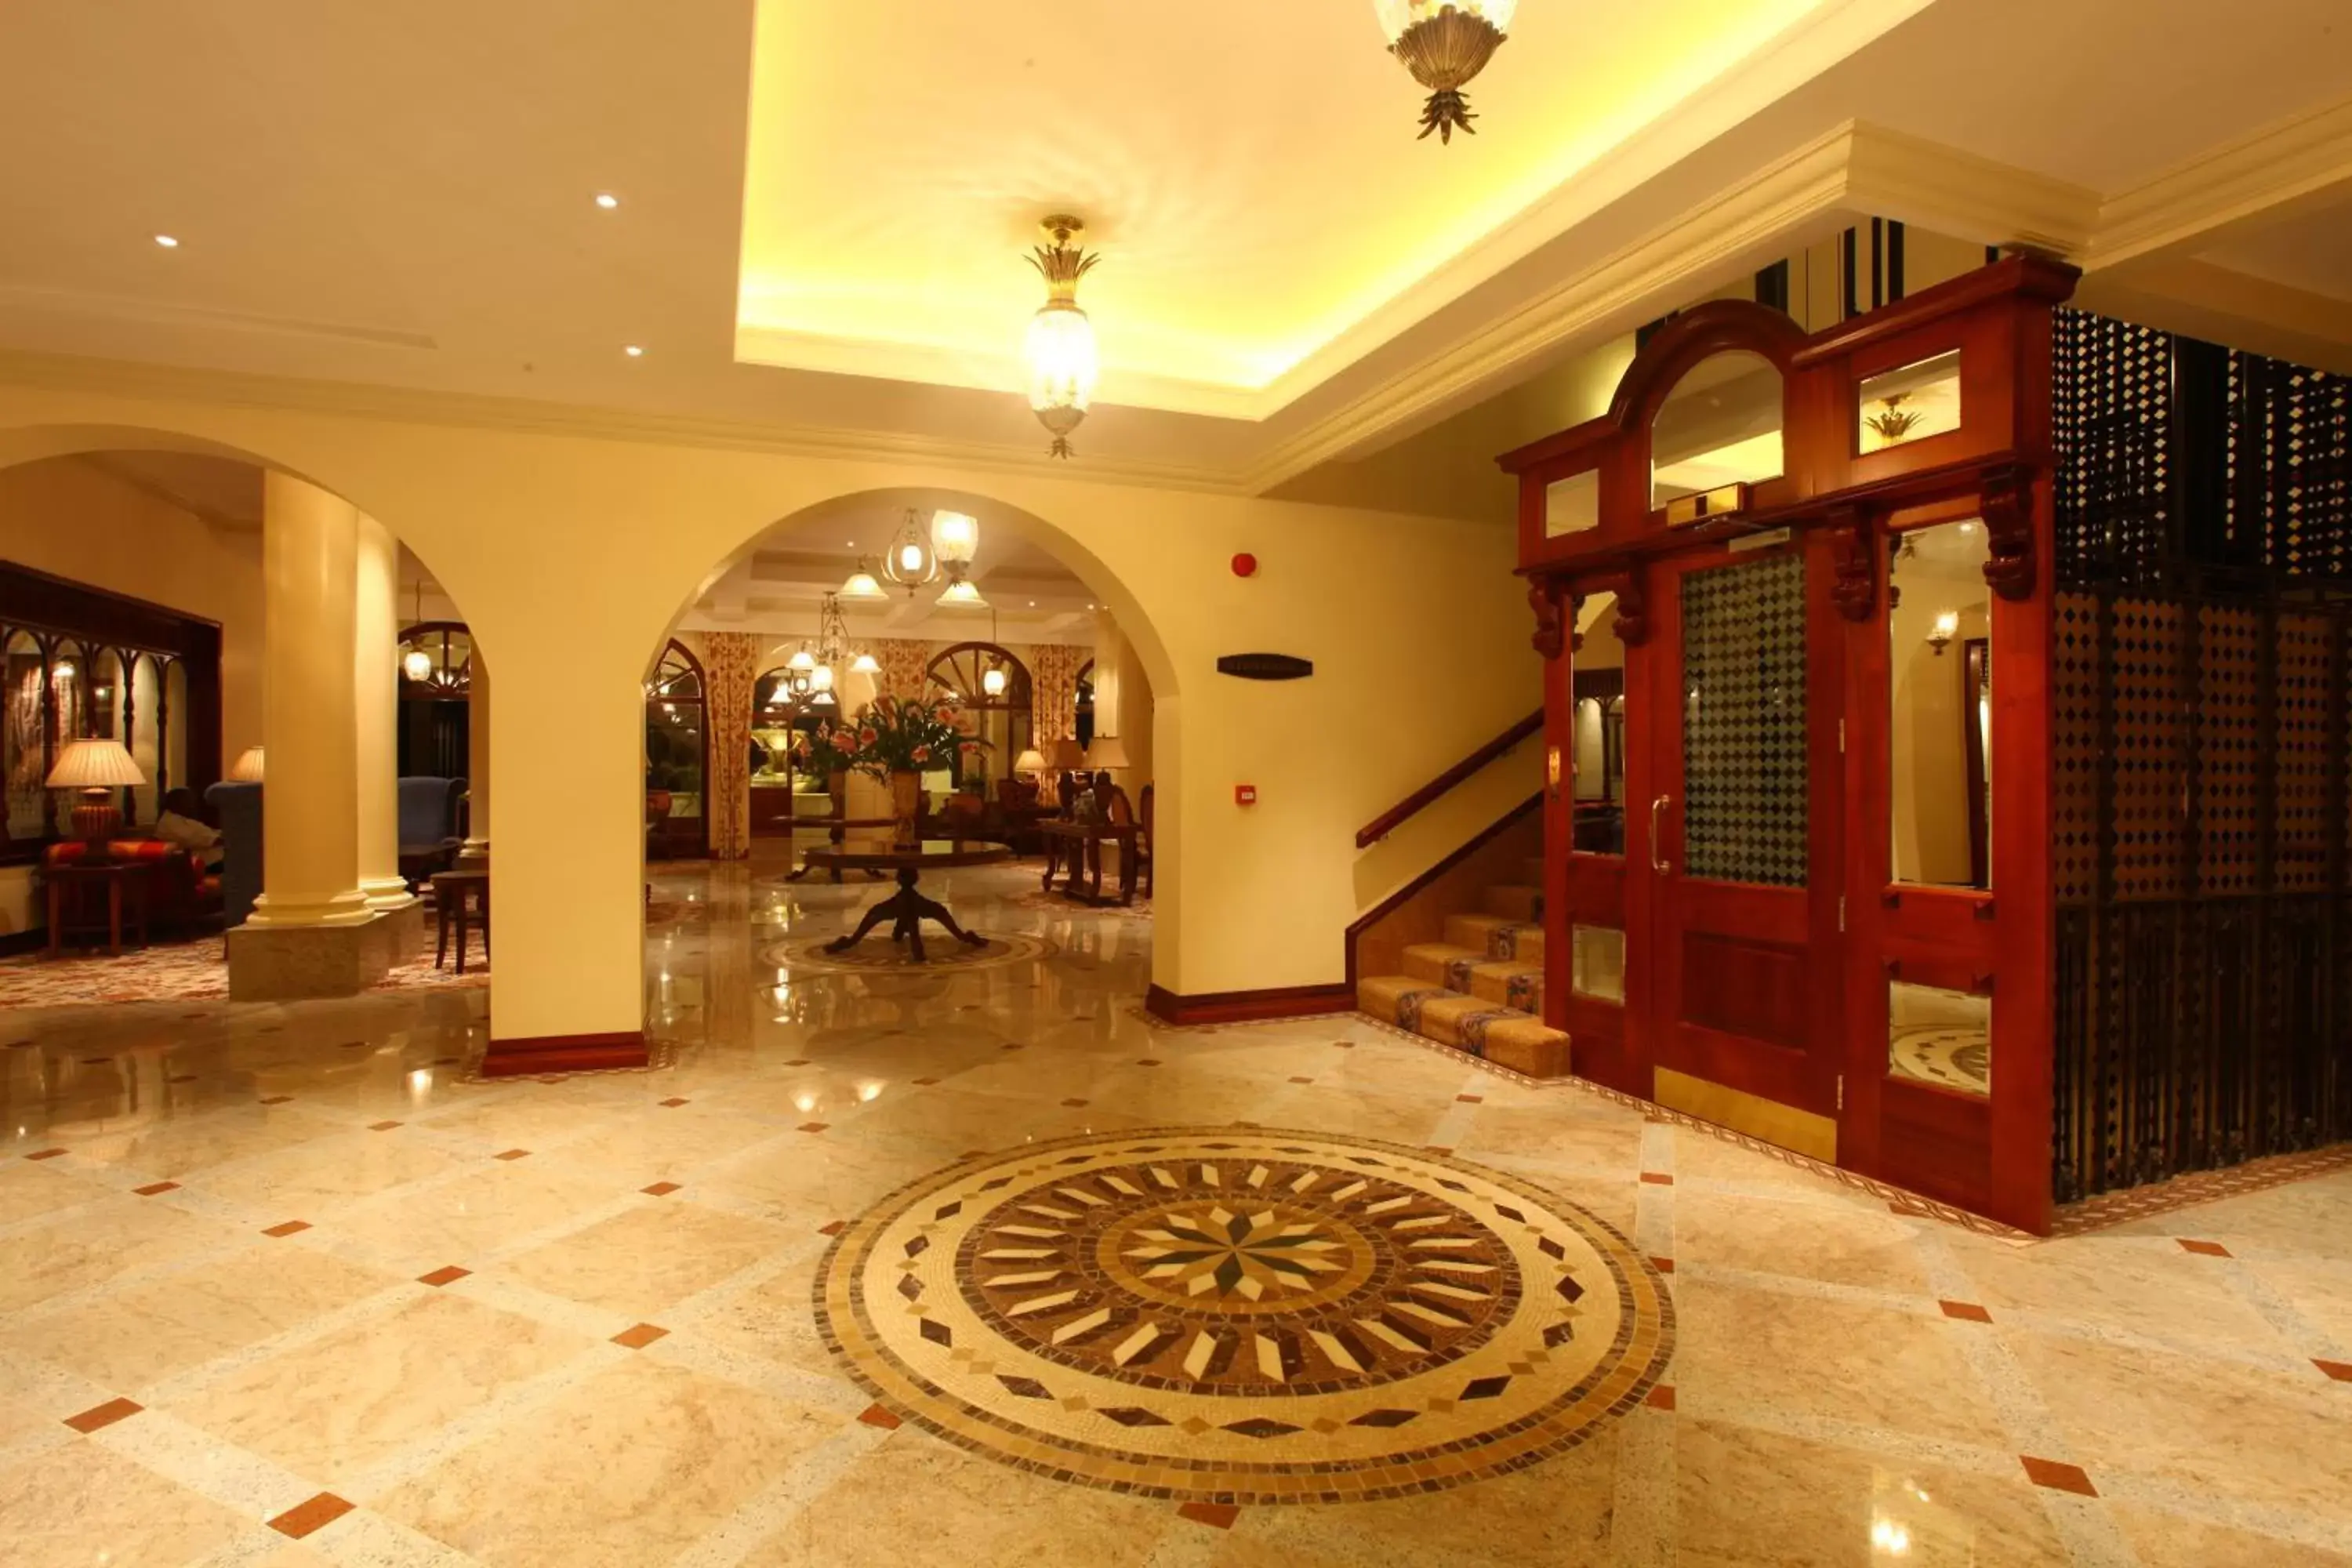 Lobby or reception, Lobby/Reception in Polana Serena Hotel